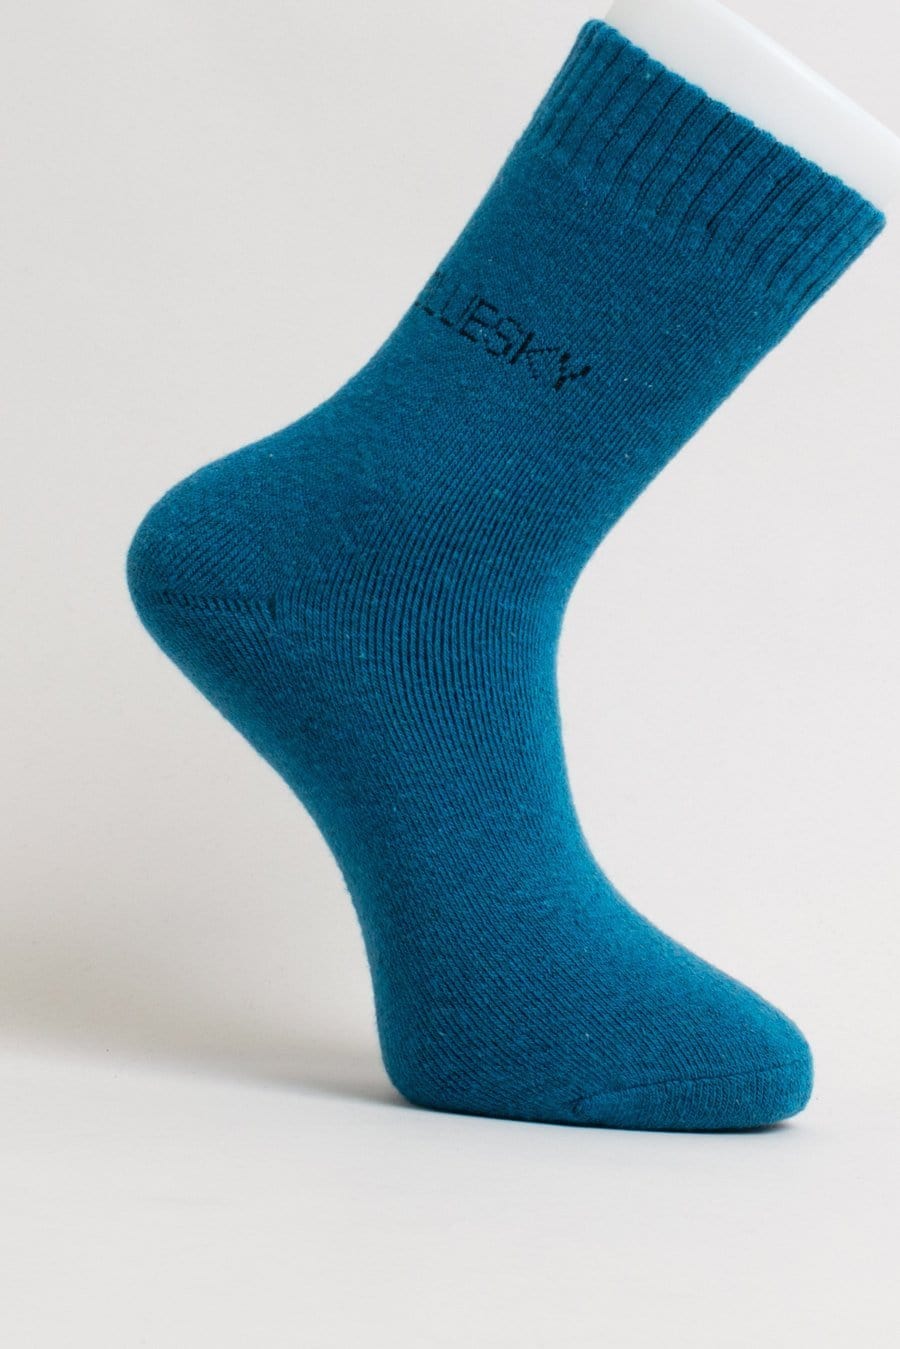 Blue Sky Women's Socks White / L Men's Socks - Merino Wool